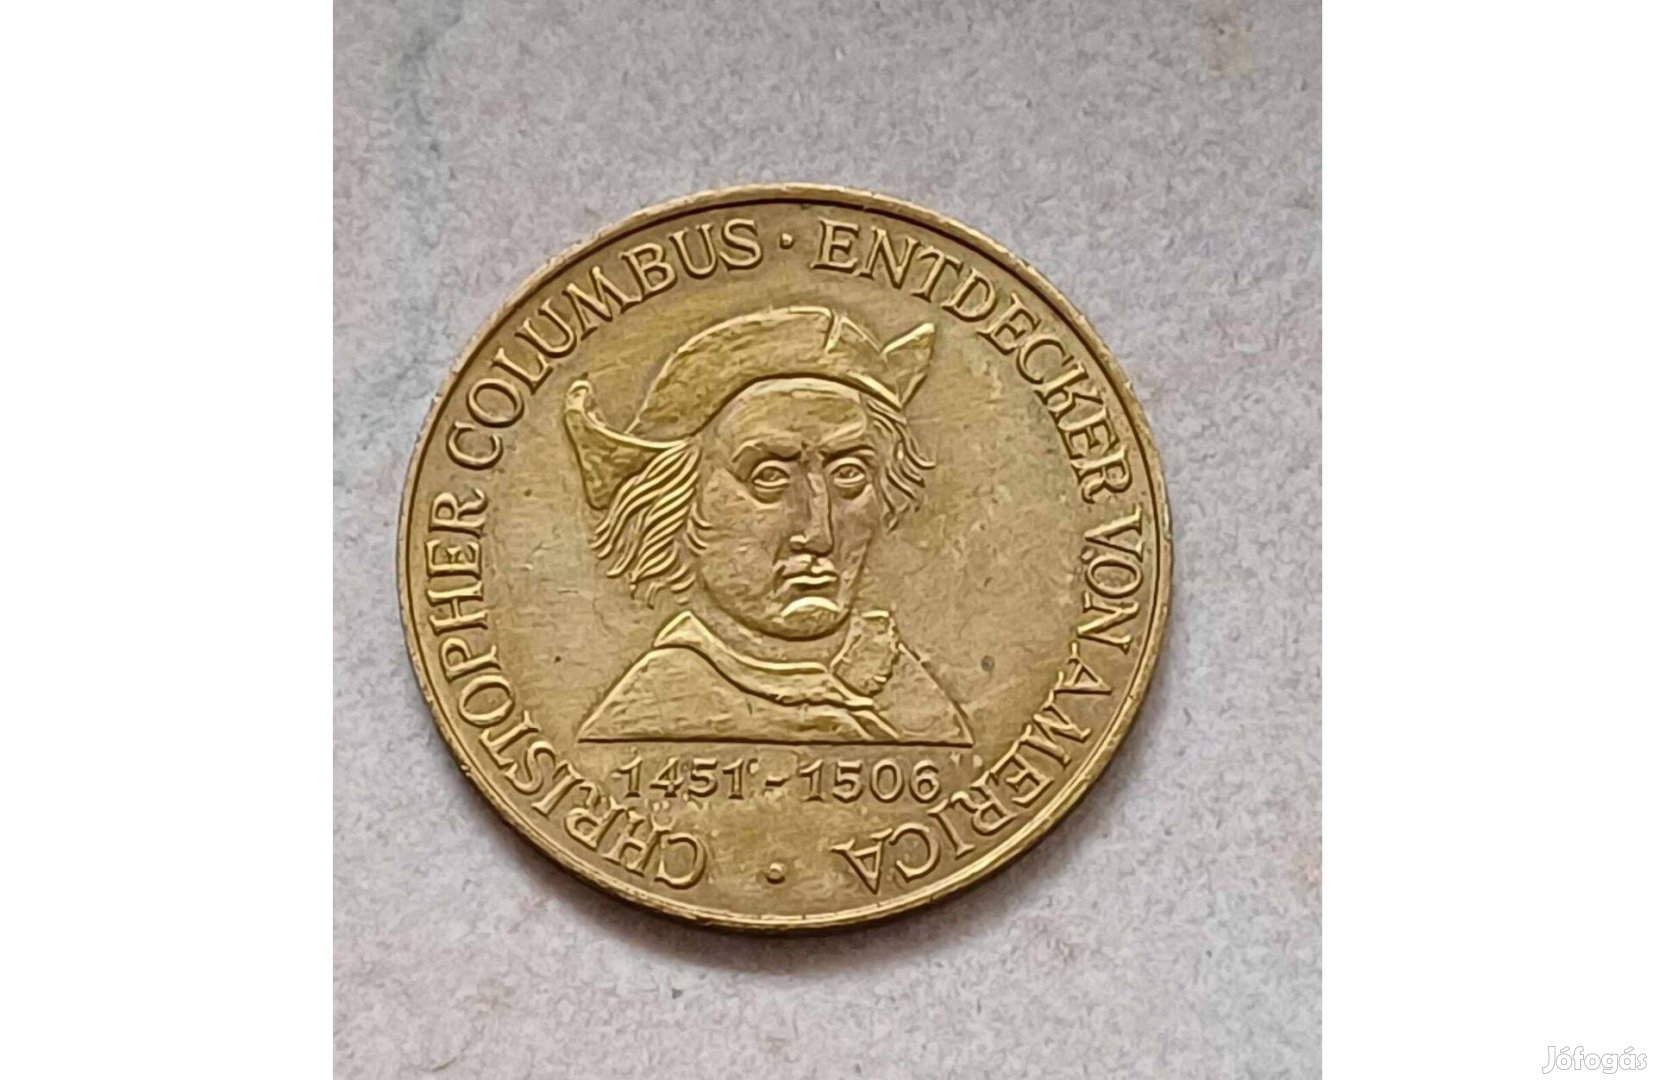 Columbus, Amerika felfedezője" kétoldalas bronz emlékérem (30mm)